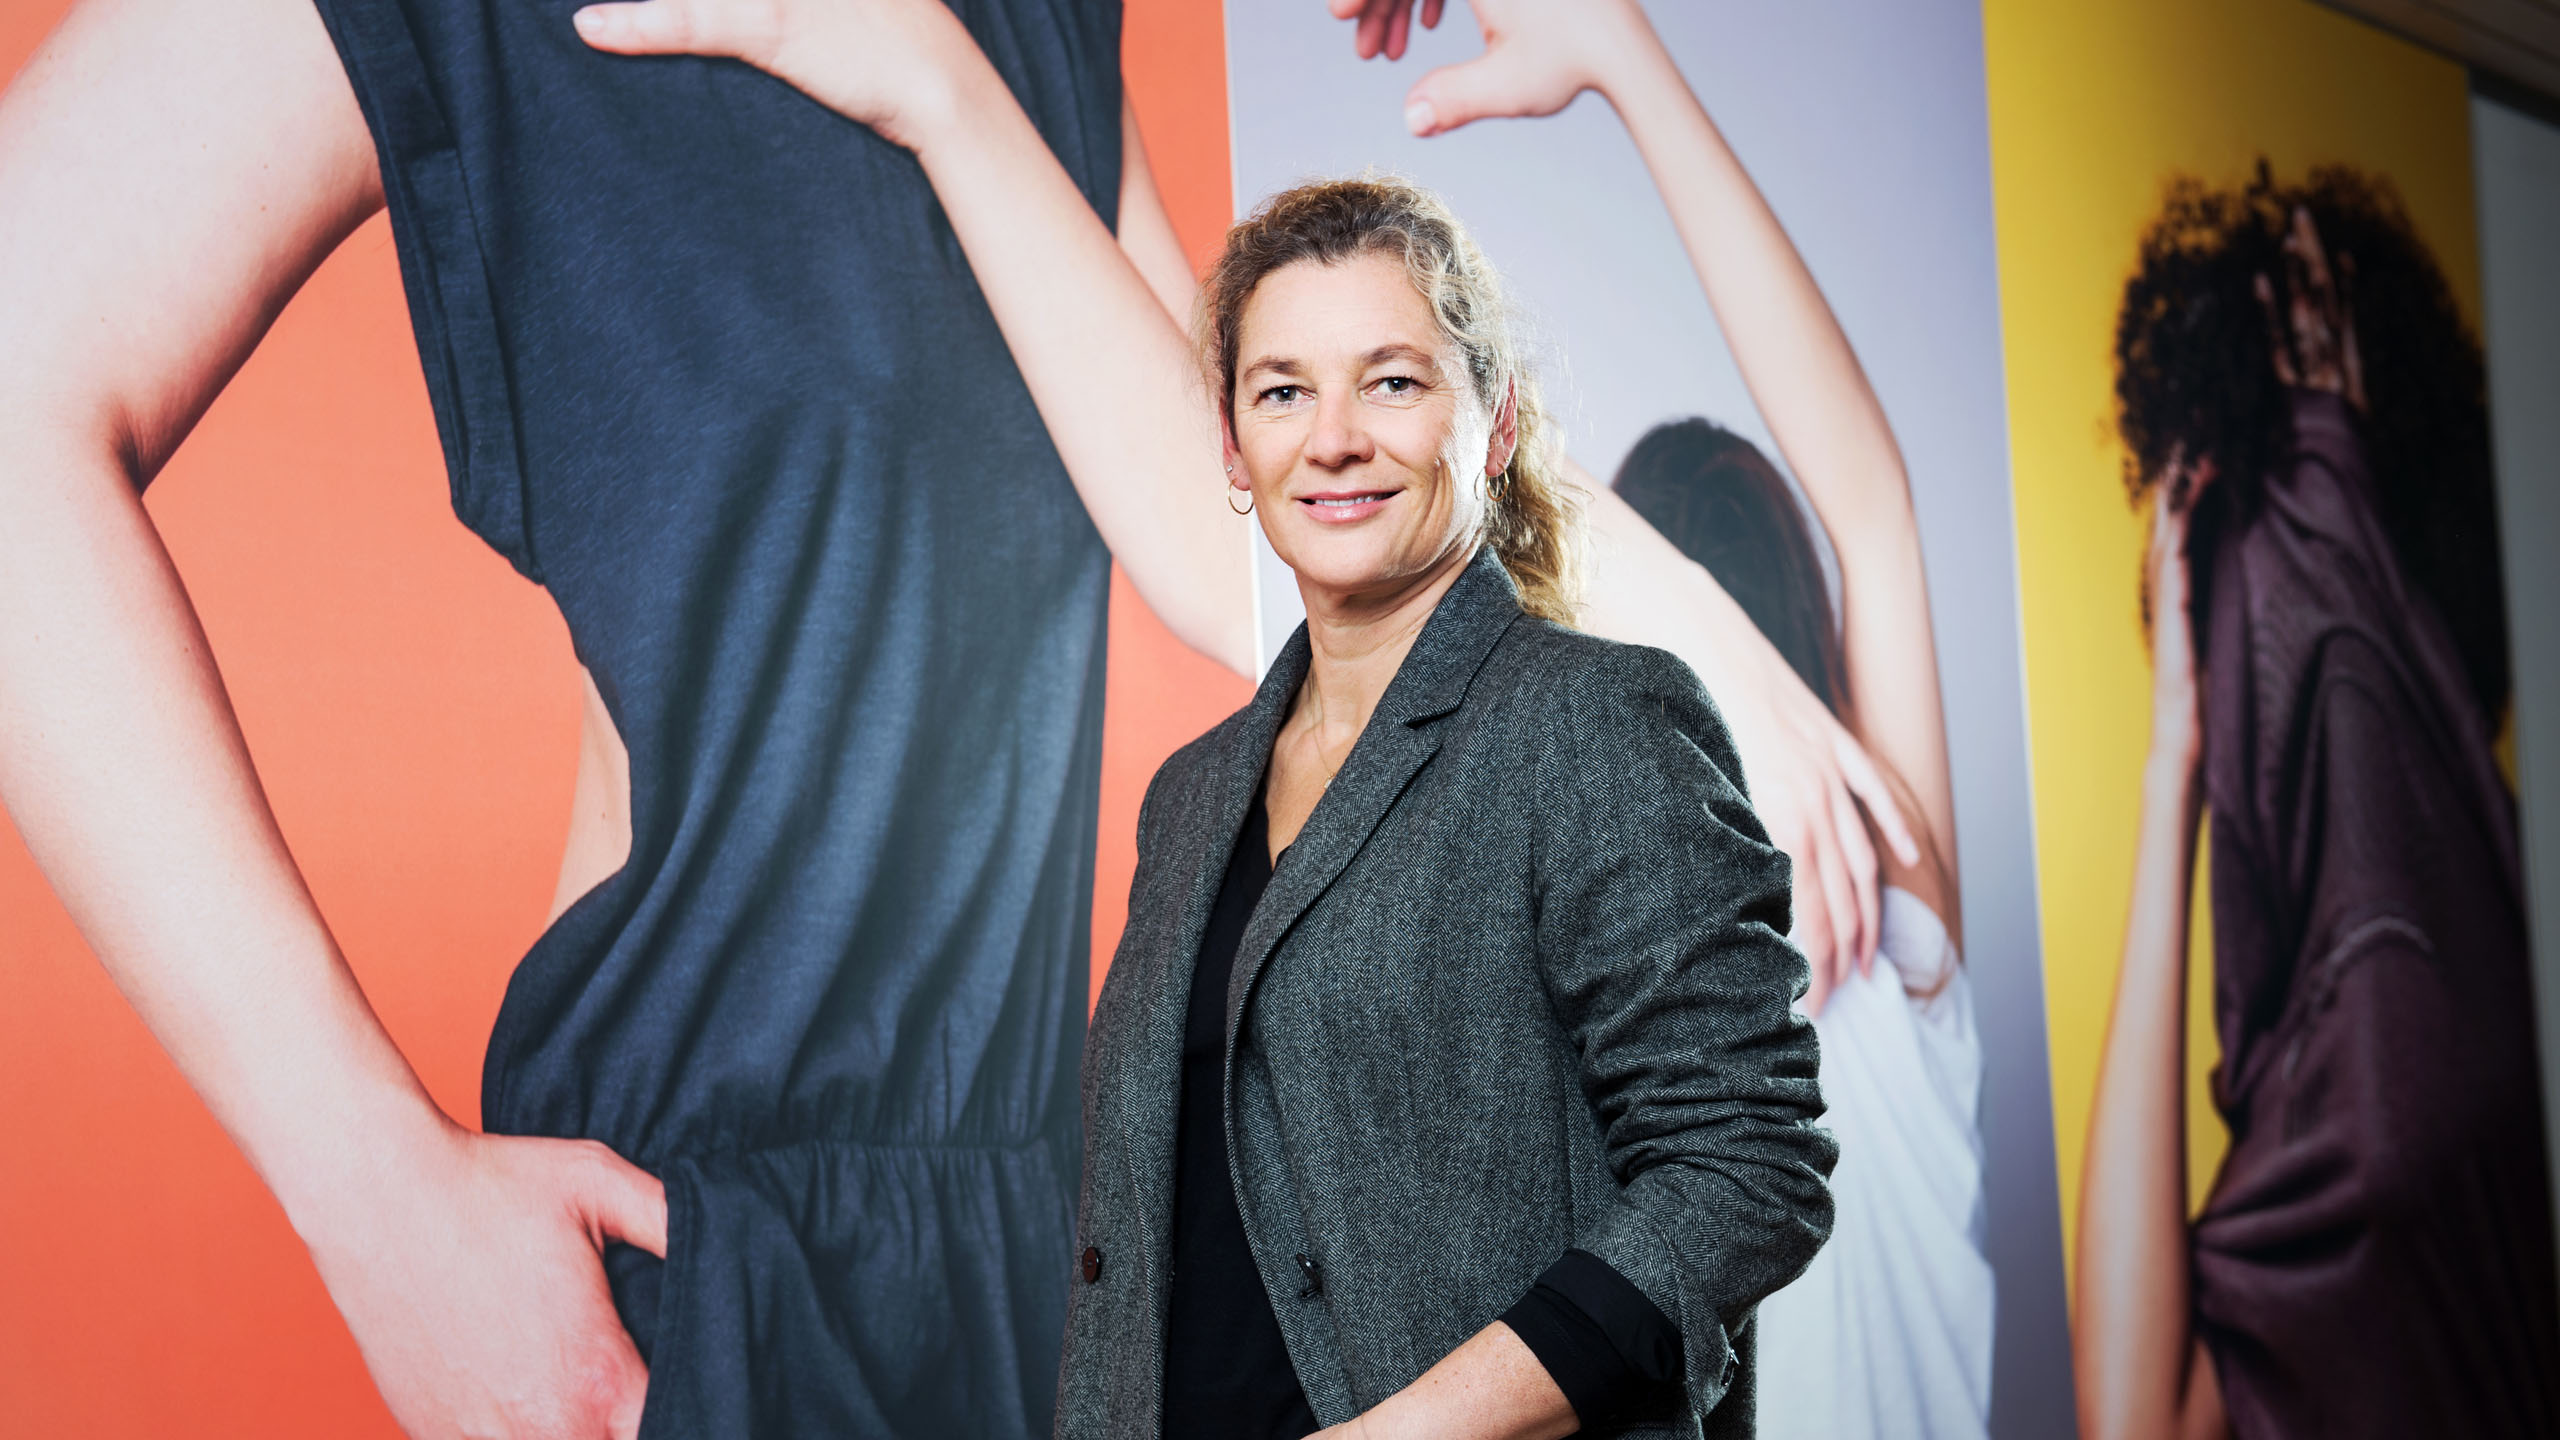 Marion Röttges, co-CEO Apparel & Communication at Remei AG